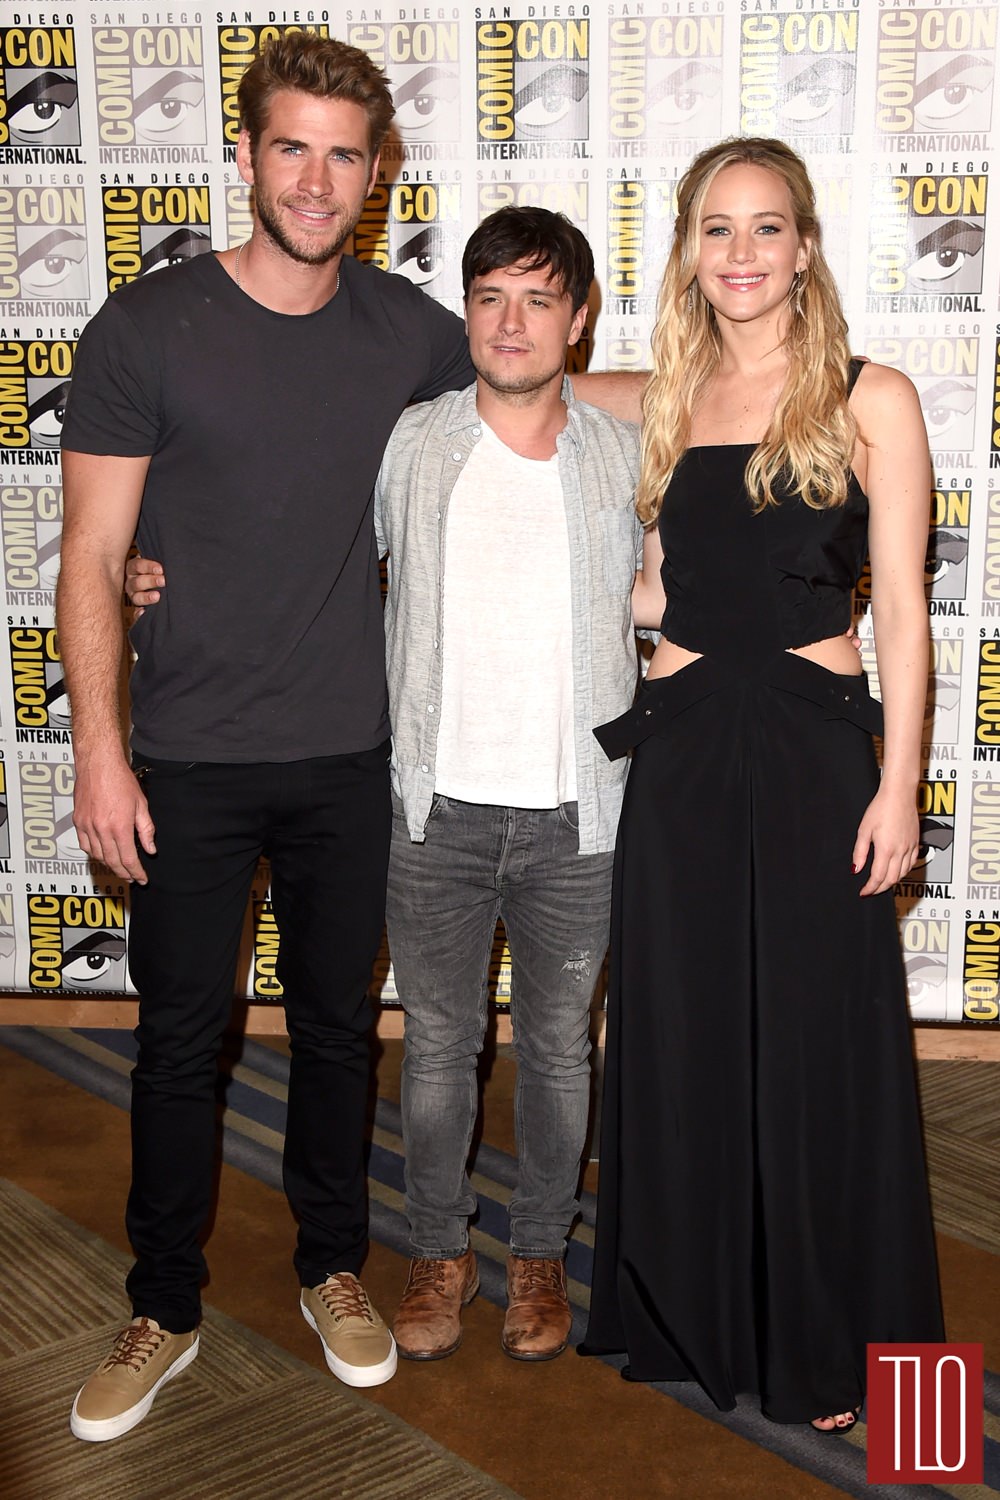 Liam-Hemsworth-Josh-Hutcherson-Jennifer-Lopez-The-Hunger-Games-Panel-Comic-Con-2015-Tom-Lorenzo-Site-TLO (1)